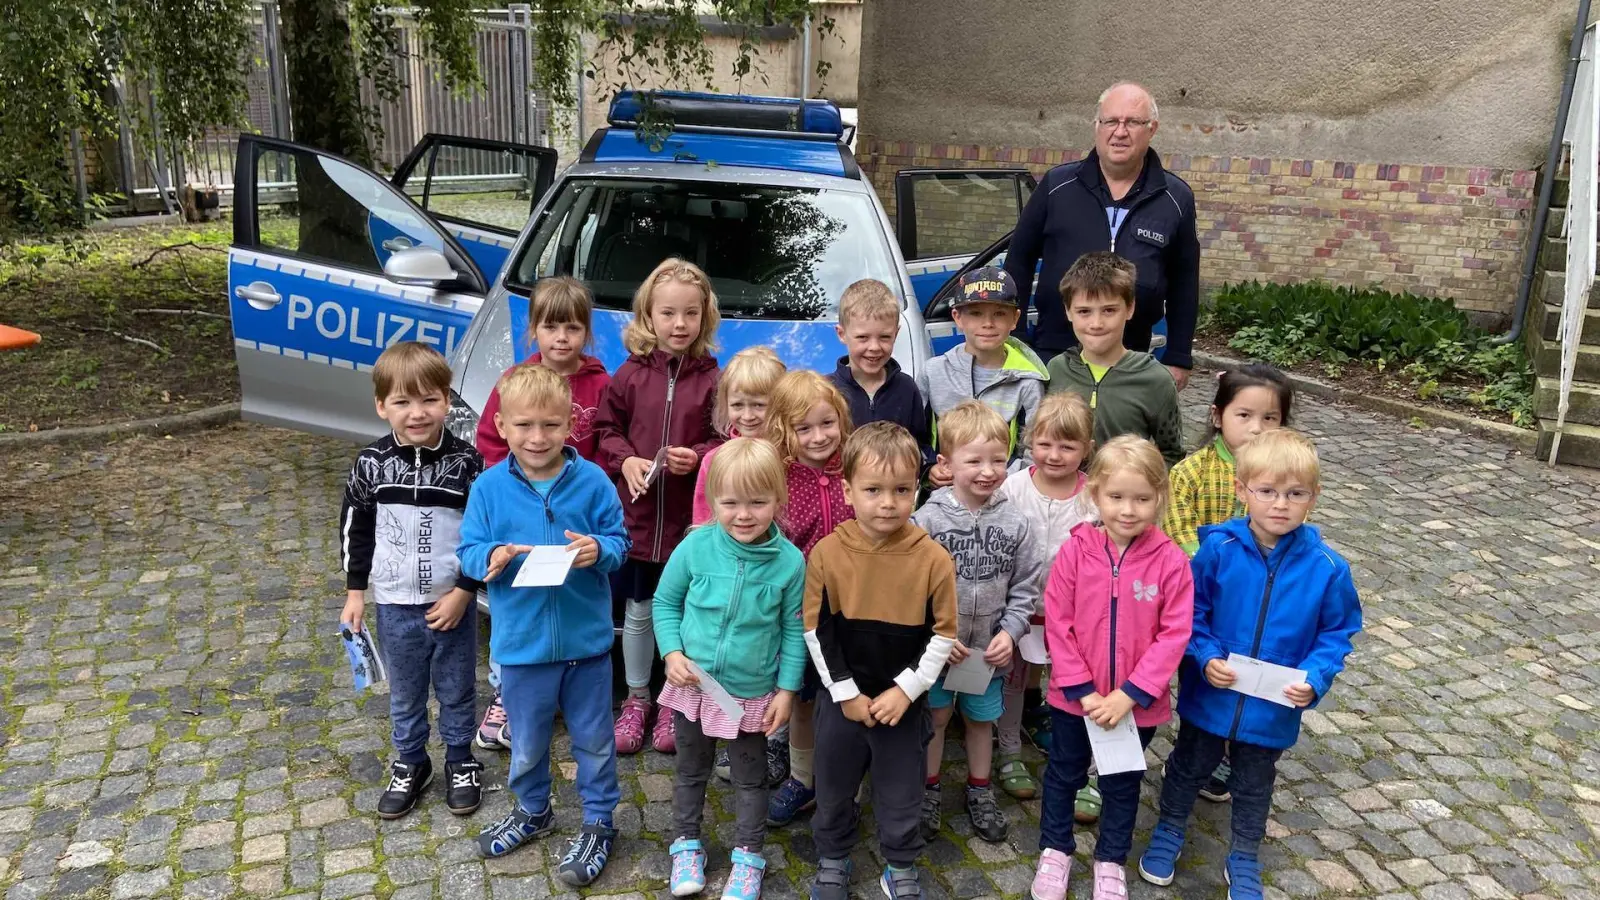 Die Pumuckl-Gruppe der Kita Koboldkiste mit Polizeihauptmeister Andree Weidner. (Foto: taucha-kompakt.de)